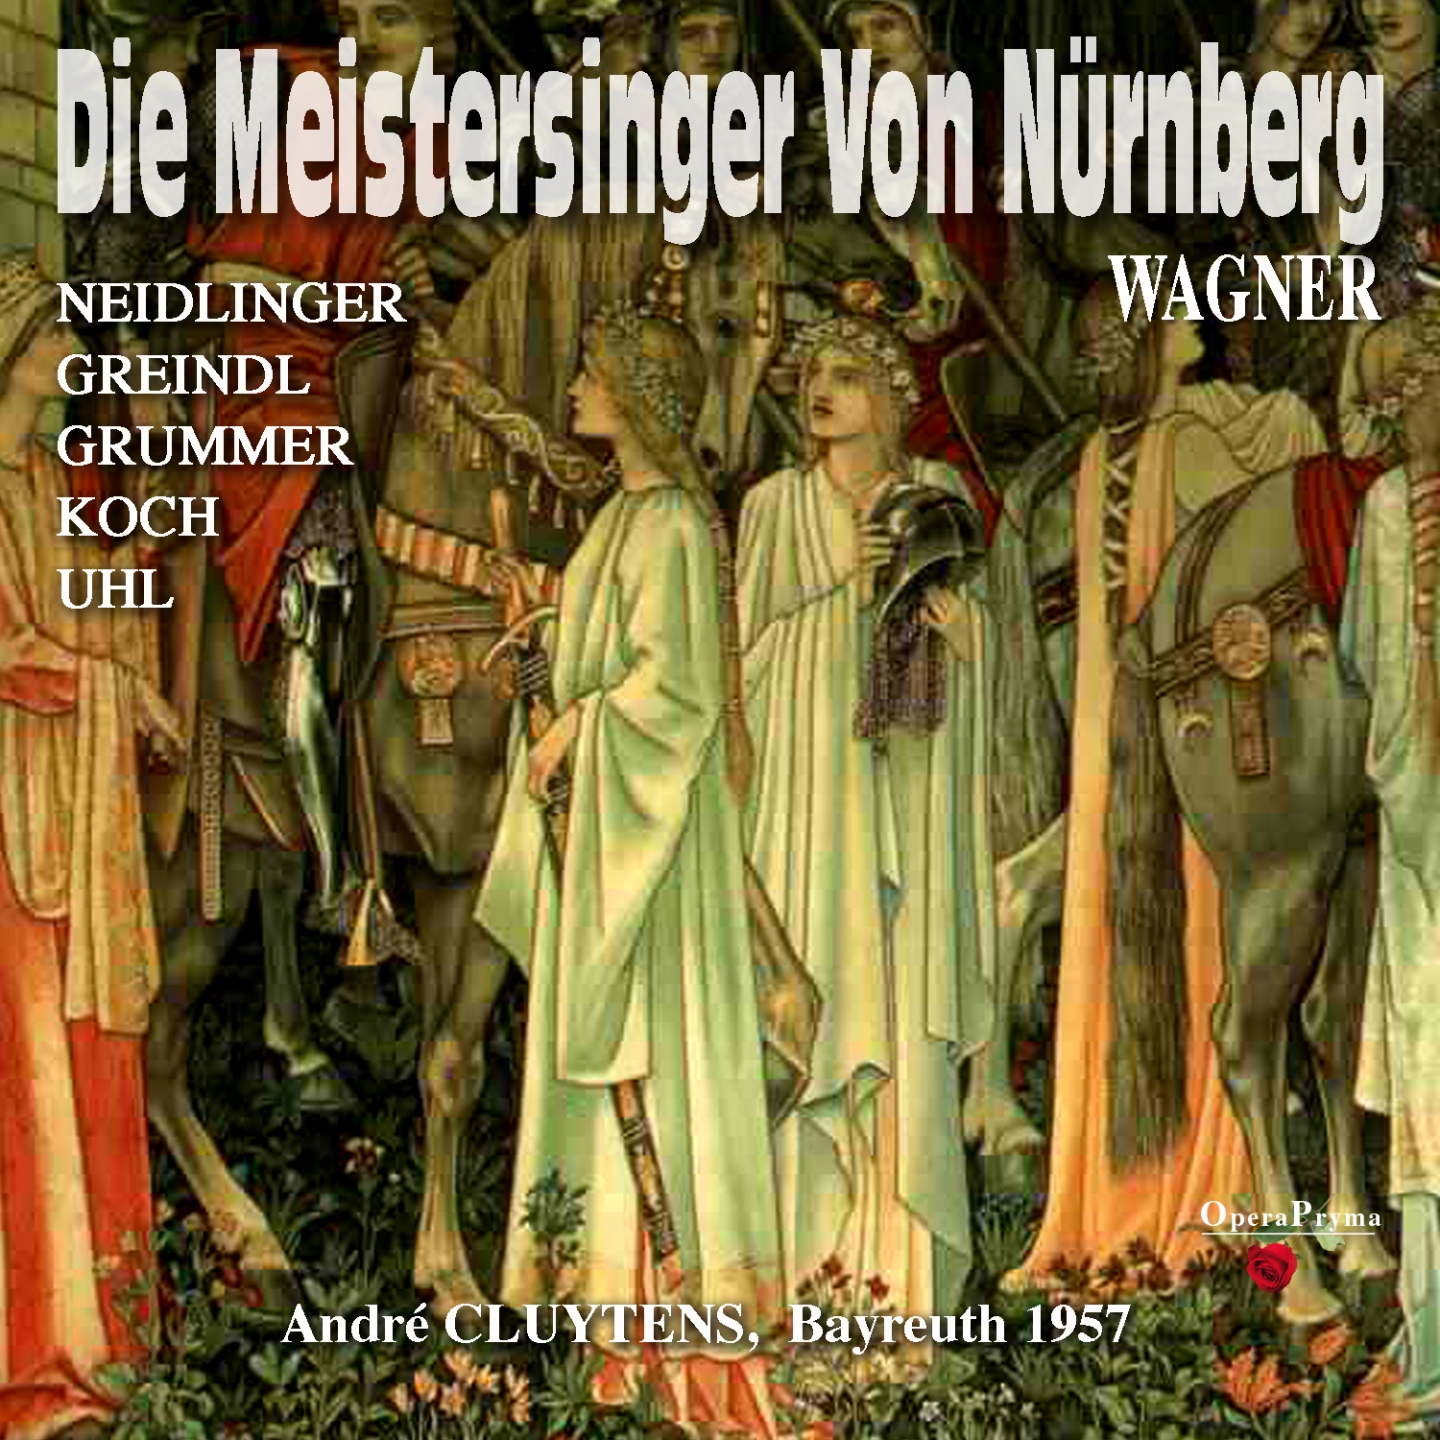 Die Meistersinger von Nü rnberg, Act III: " Weilten die Sterne im lieblichen Tanz?" Walther von Stolzing